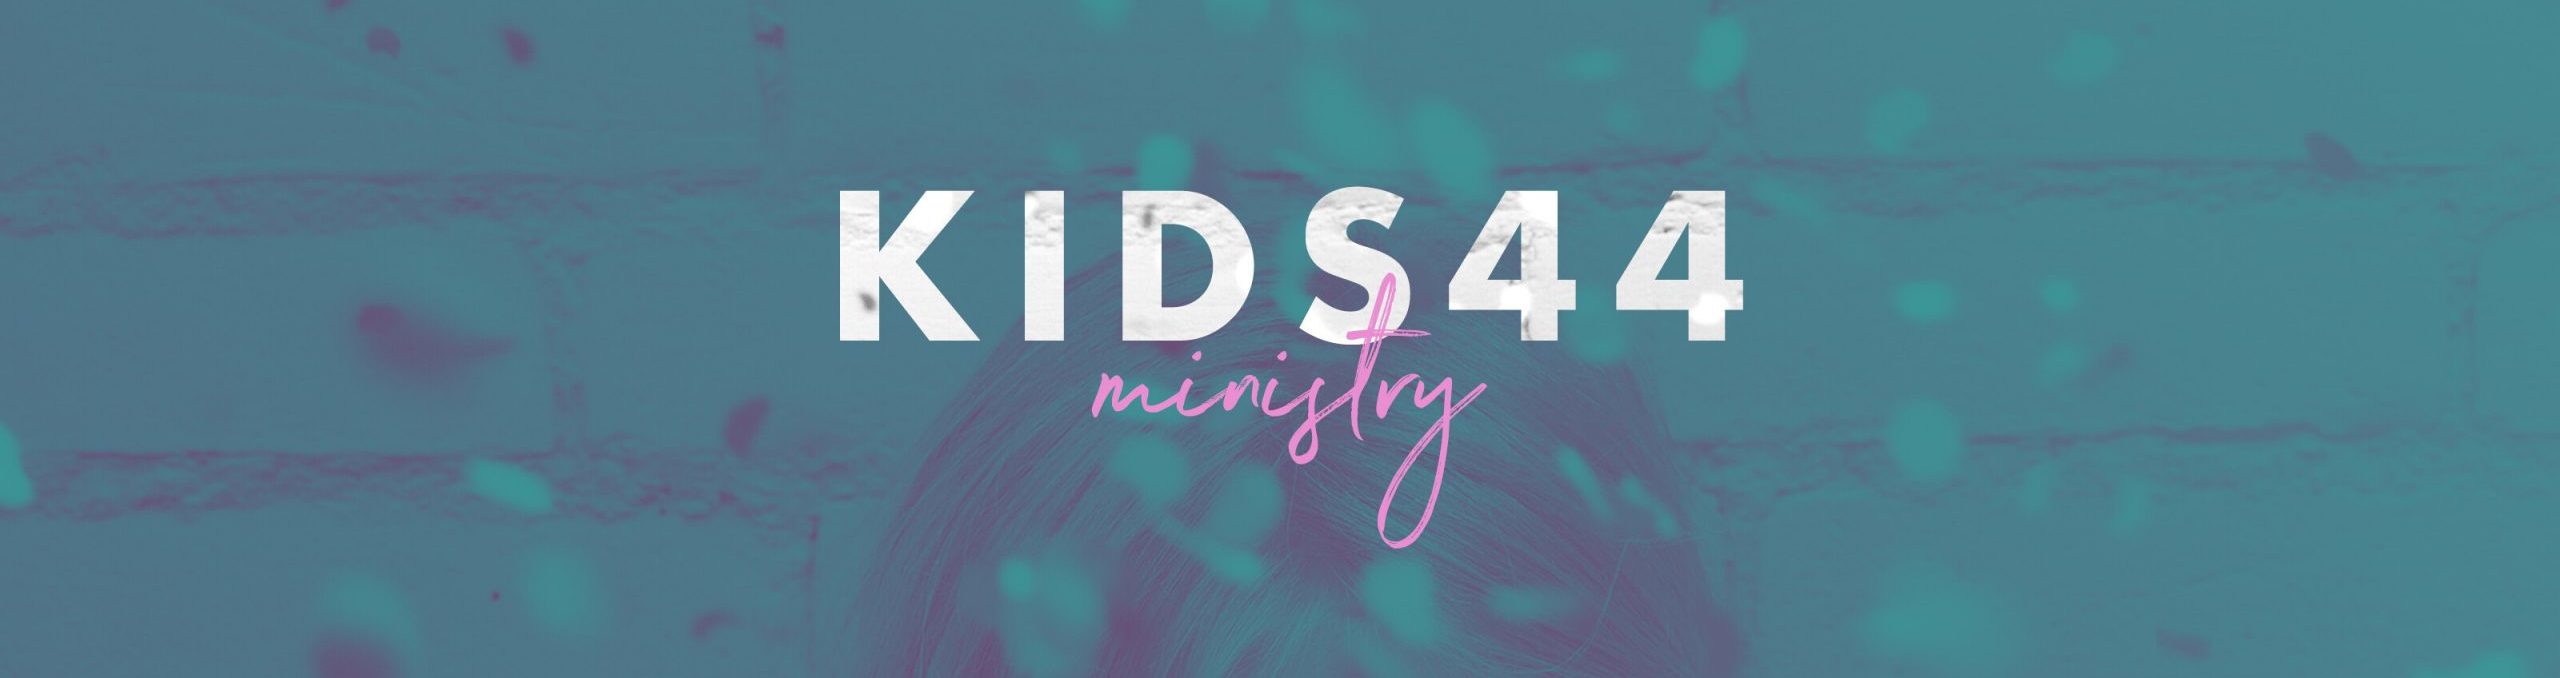 Webheader_Kids44